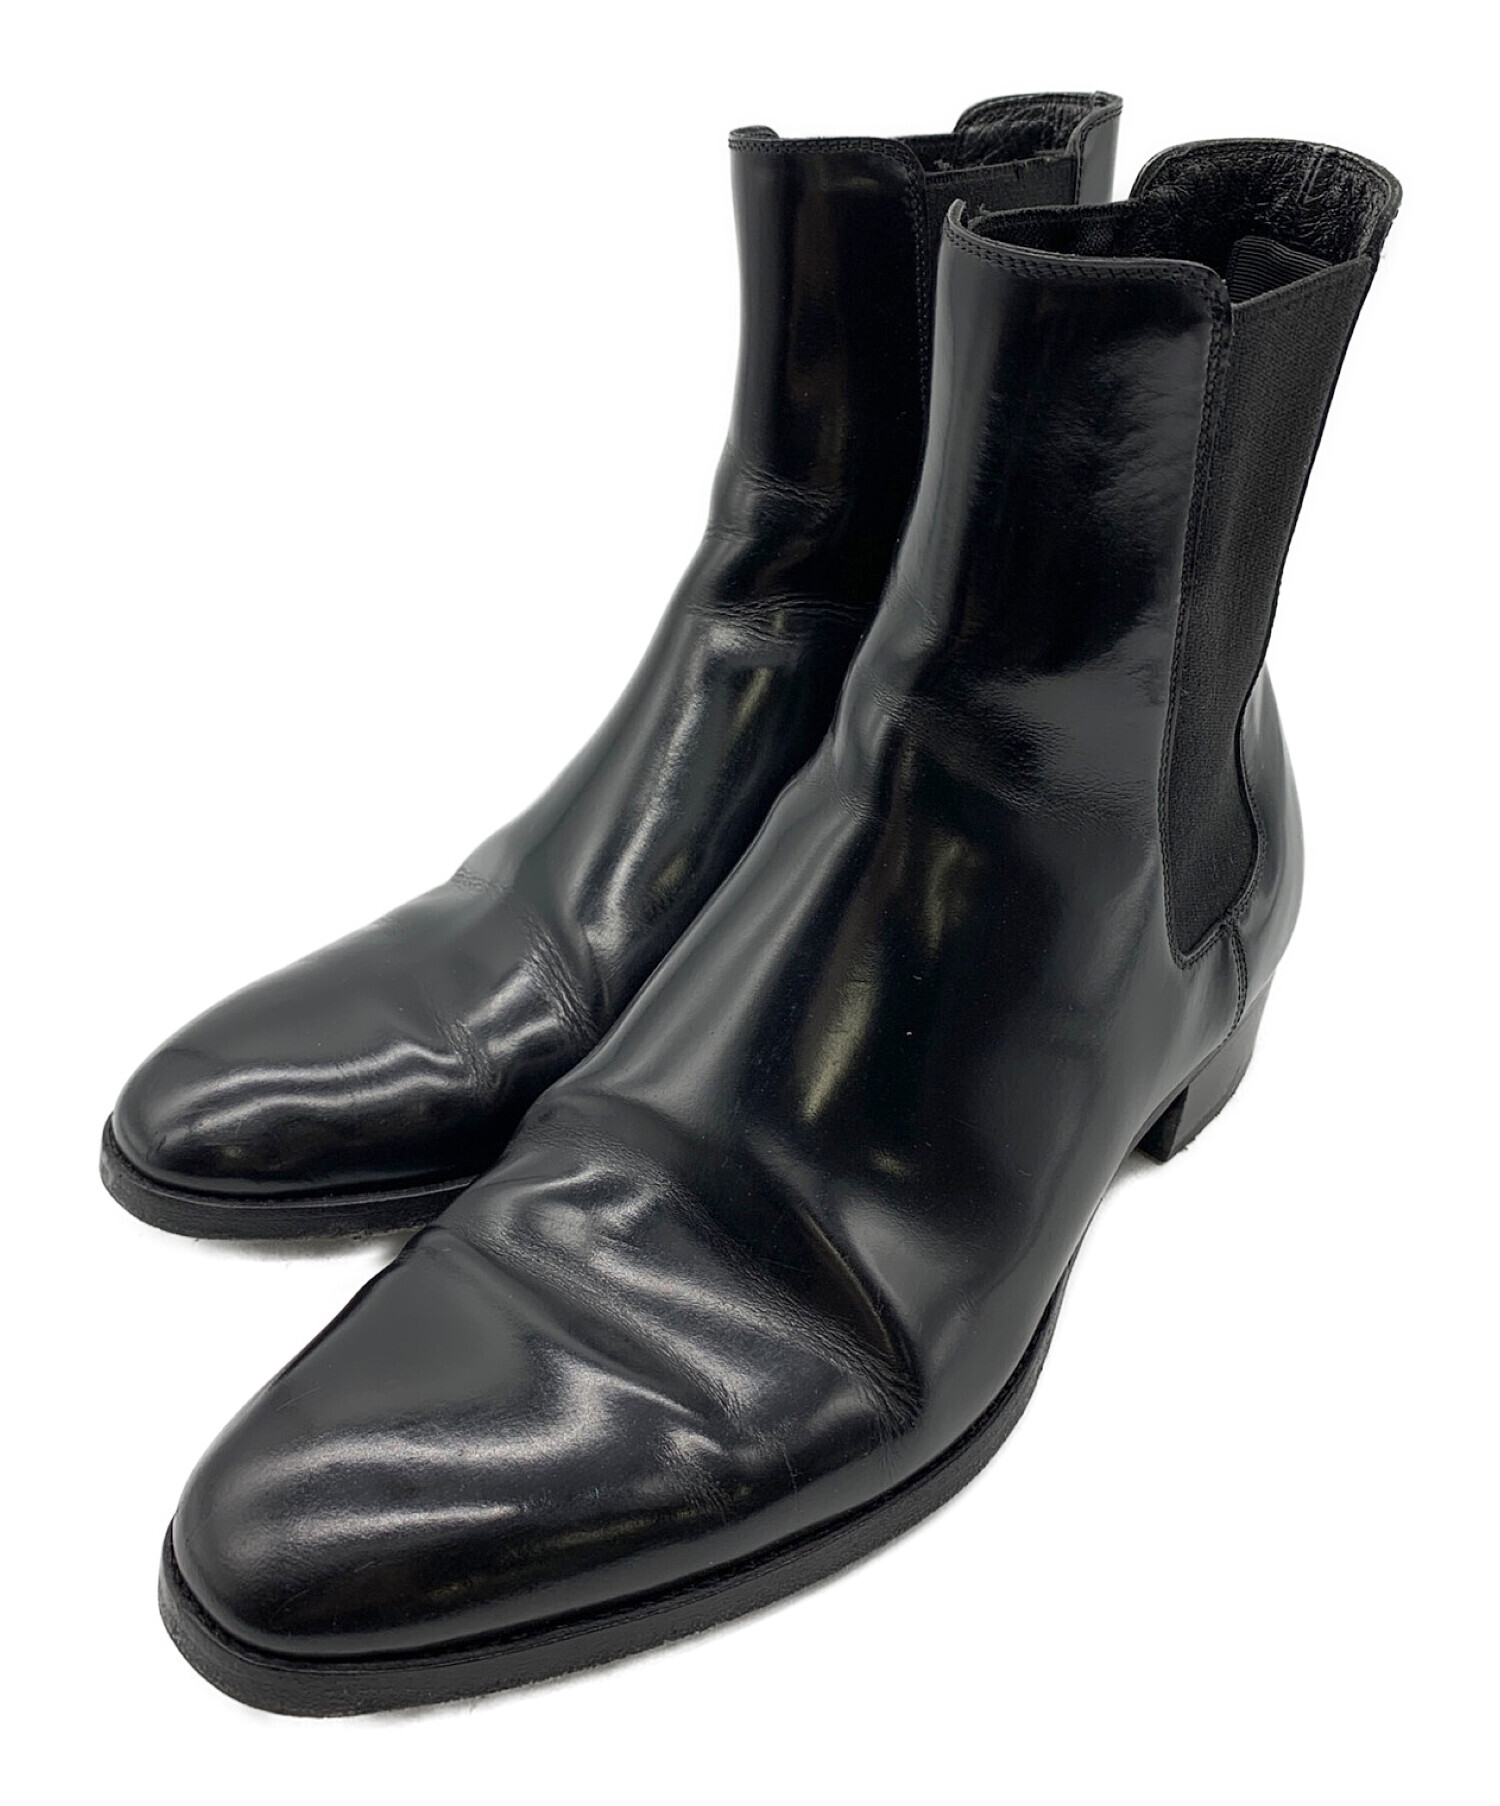 Saint Laurent boots Men's Black